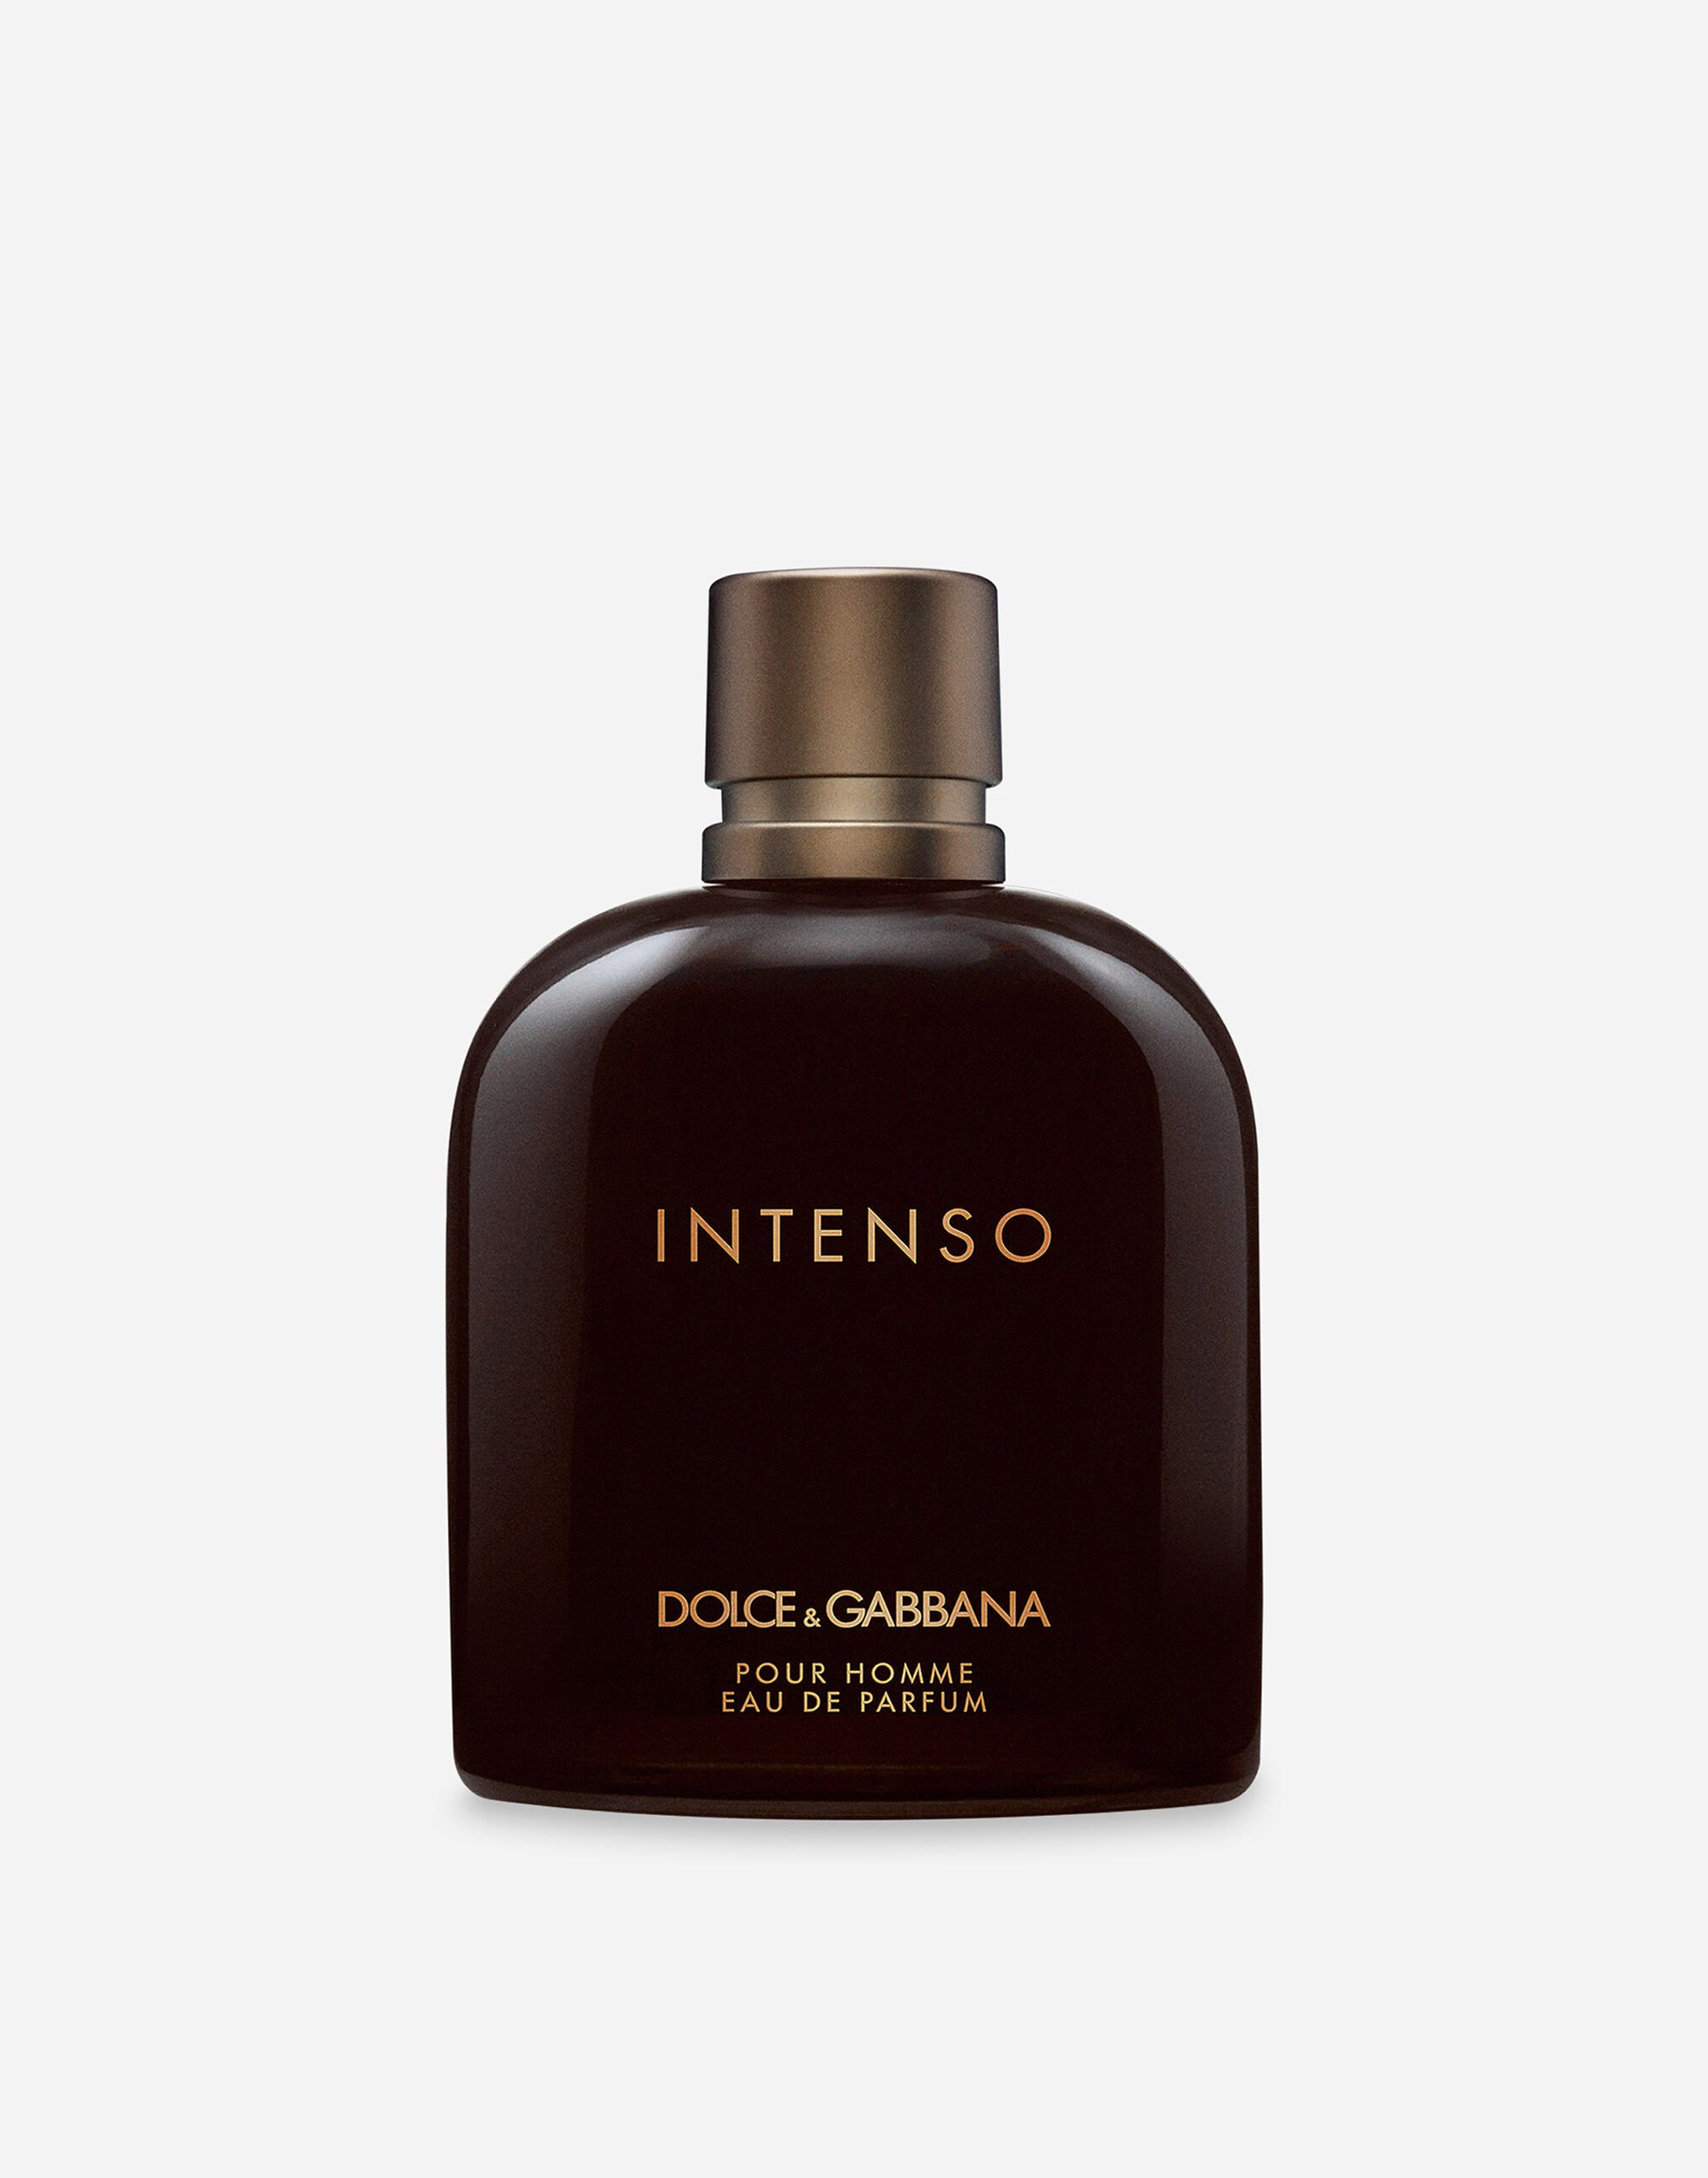 Dolce & Gabbana Intenso Eau de Parfum - VP003HVP000